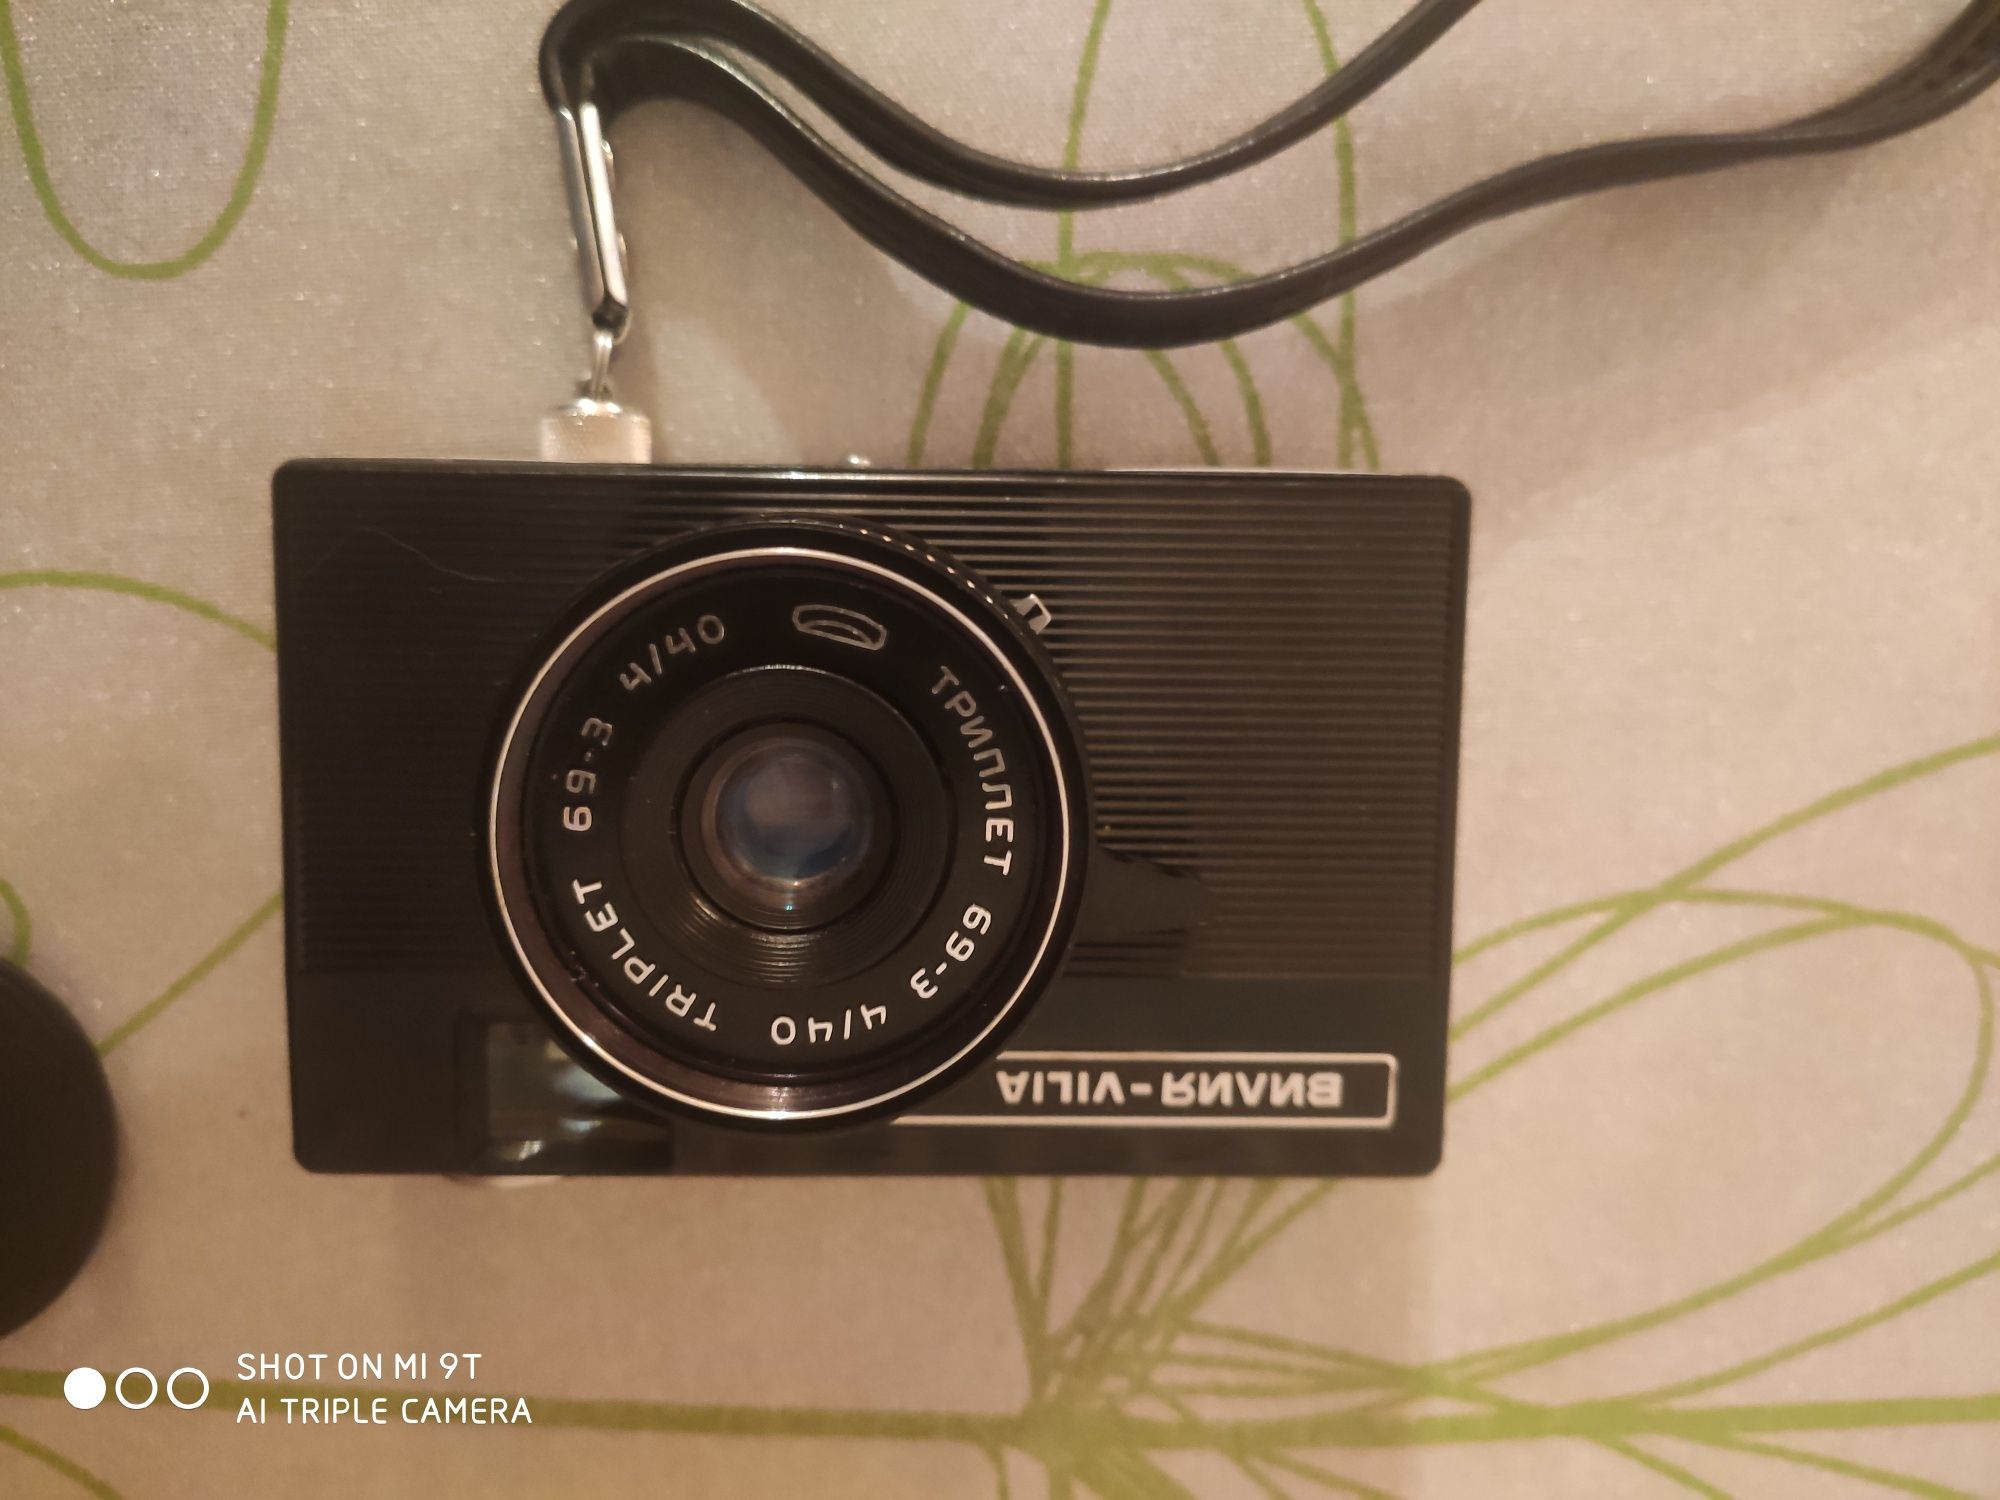 Продам плёночный фотоаппарат Вилия